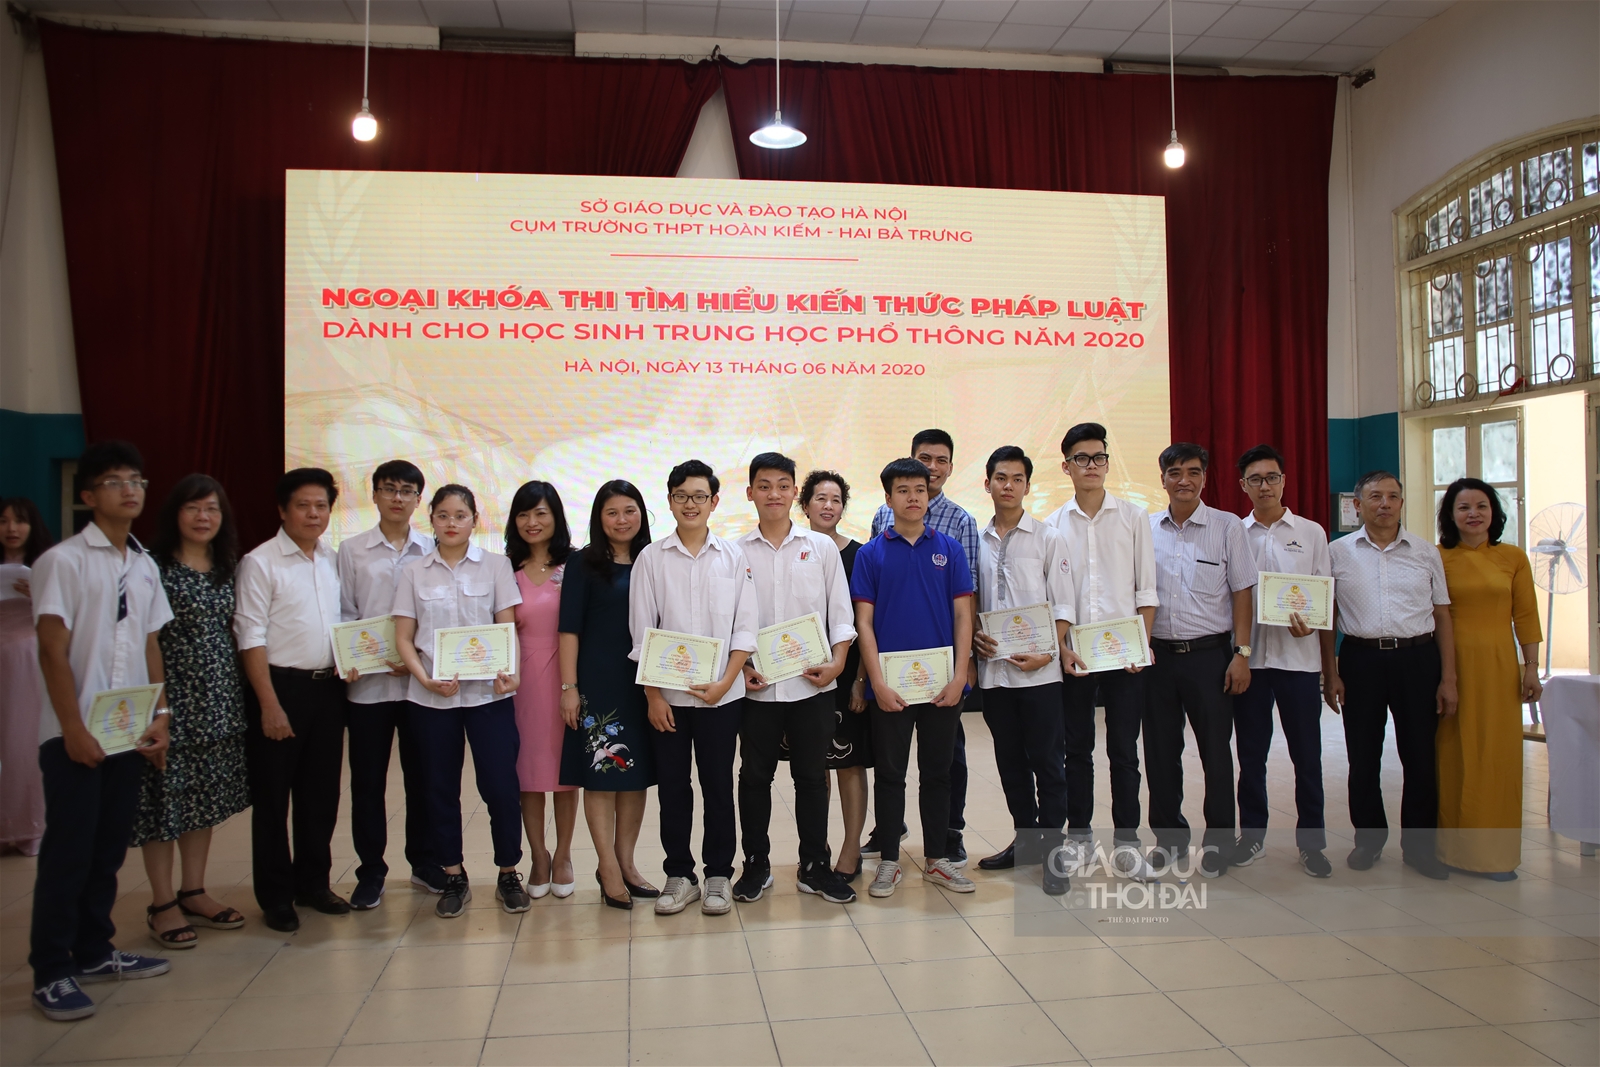 Hà Nội: Học sinh THPT hào hứng tham gia cuộc thi tìm hiểu kiến thức pháp luật - Ảnh minh hoạ 11